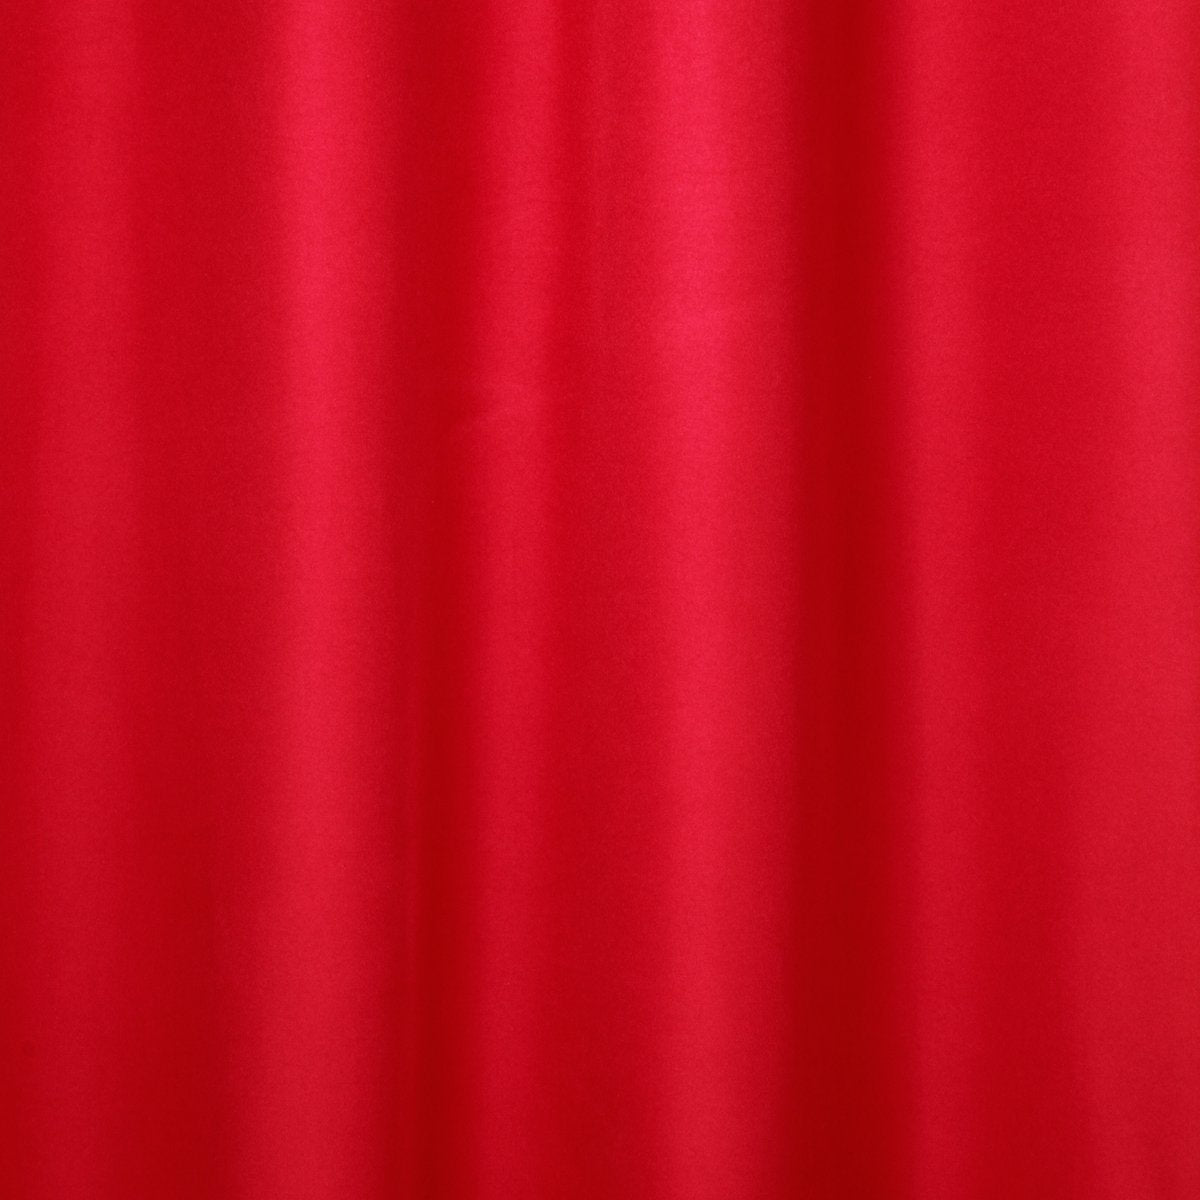 Atmosphera Isolerende Rood gordijn met 140 x 260 cm - gordijn raambekleding - gordijnen kant en klaar met haakjes ringen